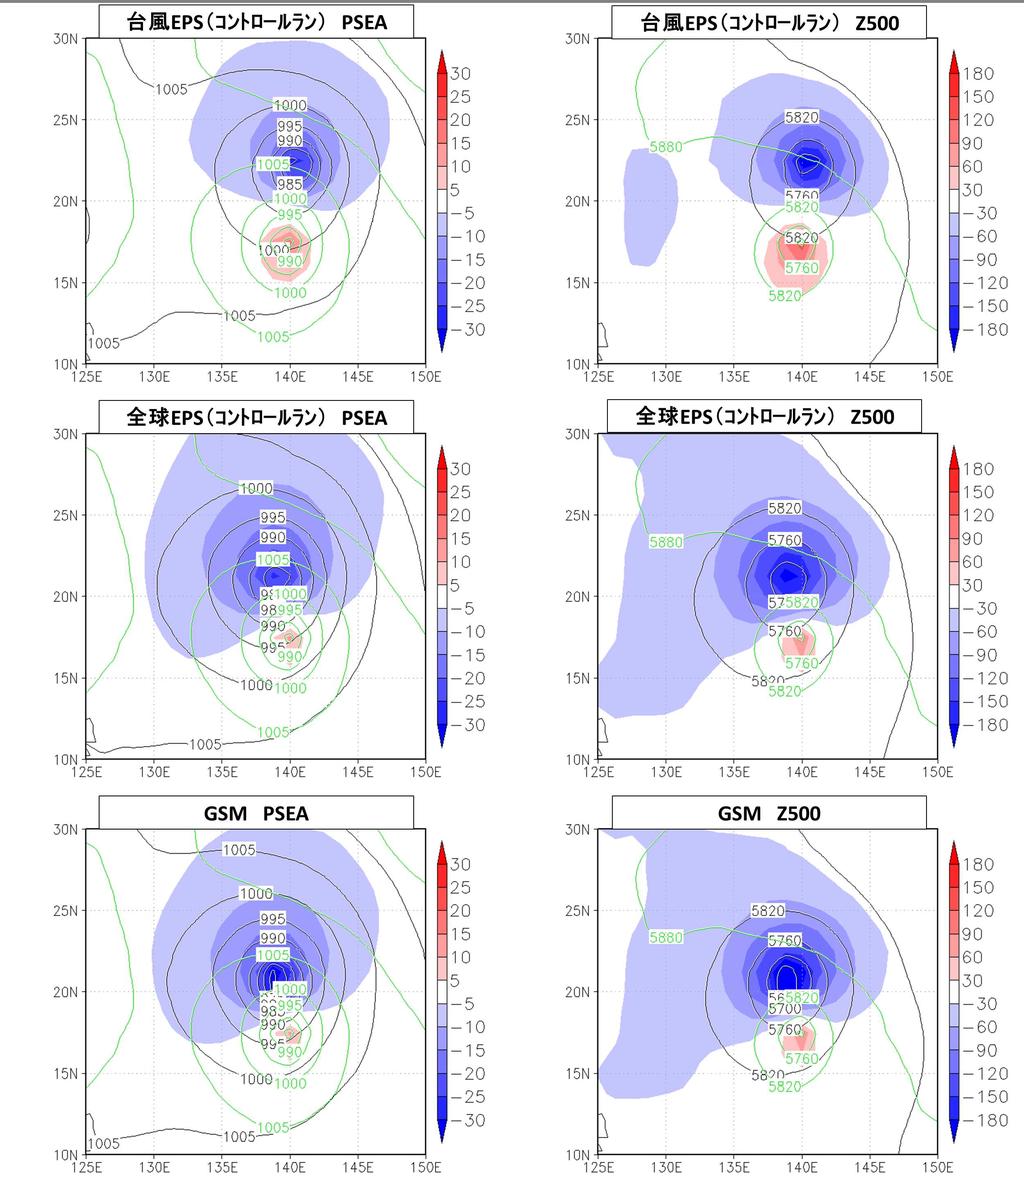 プル数はほぼ重な っ て いる 9 2015 年台風第 3 号の 3 月 11 日 12UTC 初期時刻 の予測結果 図の見方は8 と 同じ 8 2016 年台風第 18 号の 10 月 1 日 18UTC 初期時刻 の予測結果 左は全球 EPS 右は台風 EPS のも の 黒実 線はベス ト ト ラ ッ ク 記号は初期時刻から 5 日先ま での 一日ごと 18UTC の中心位置である